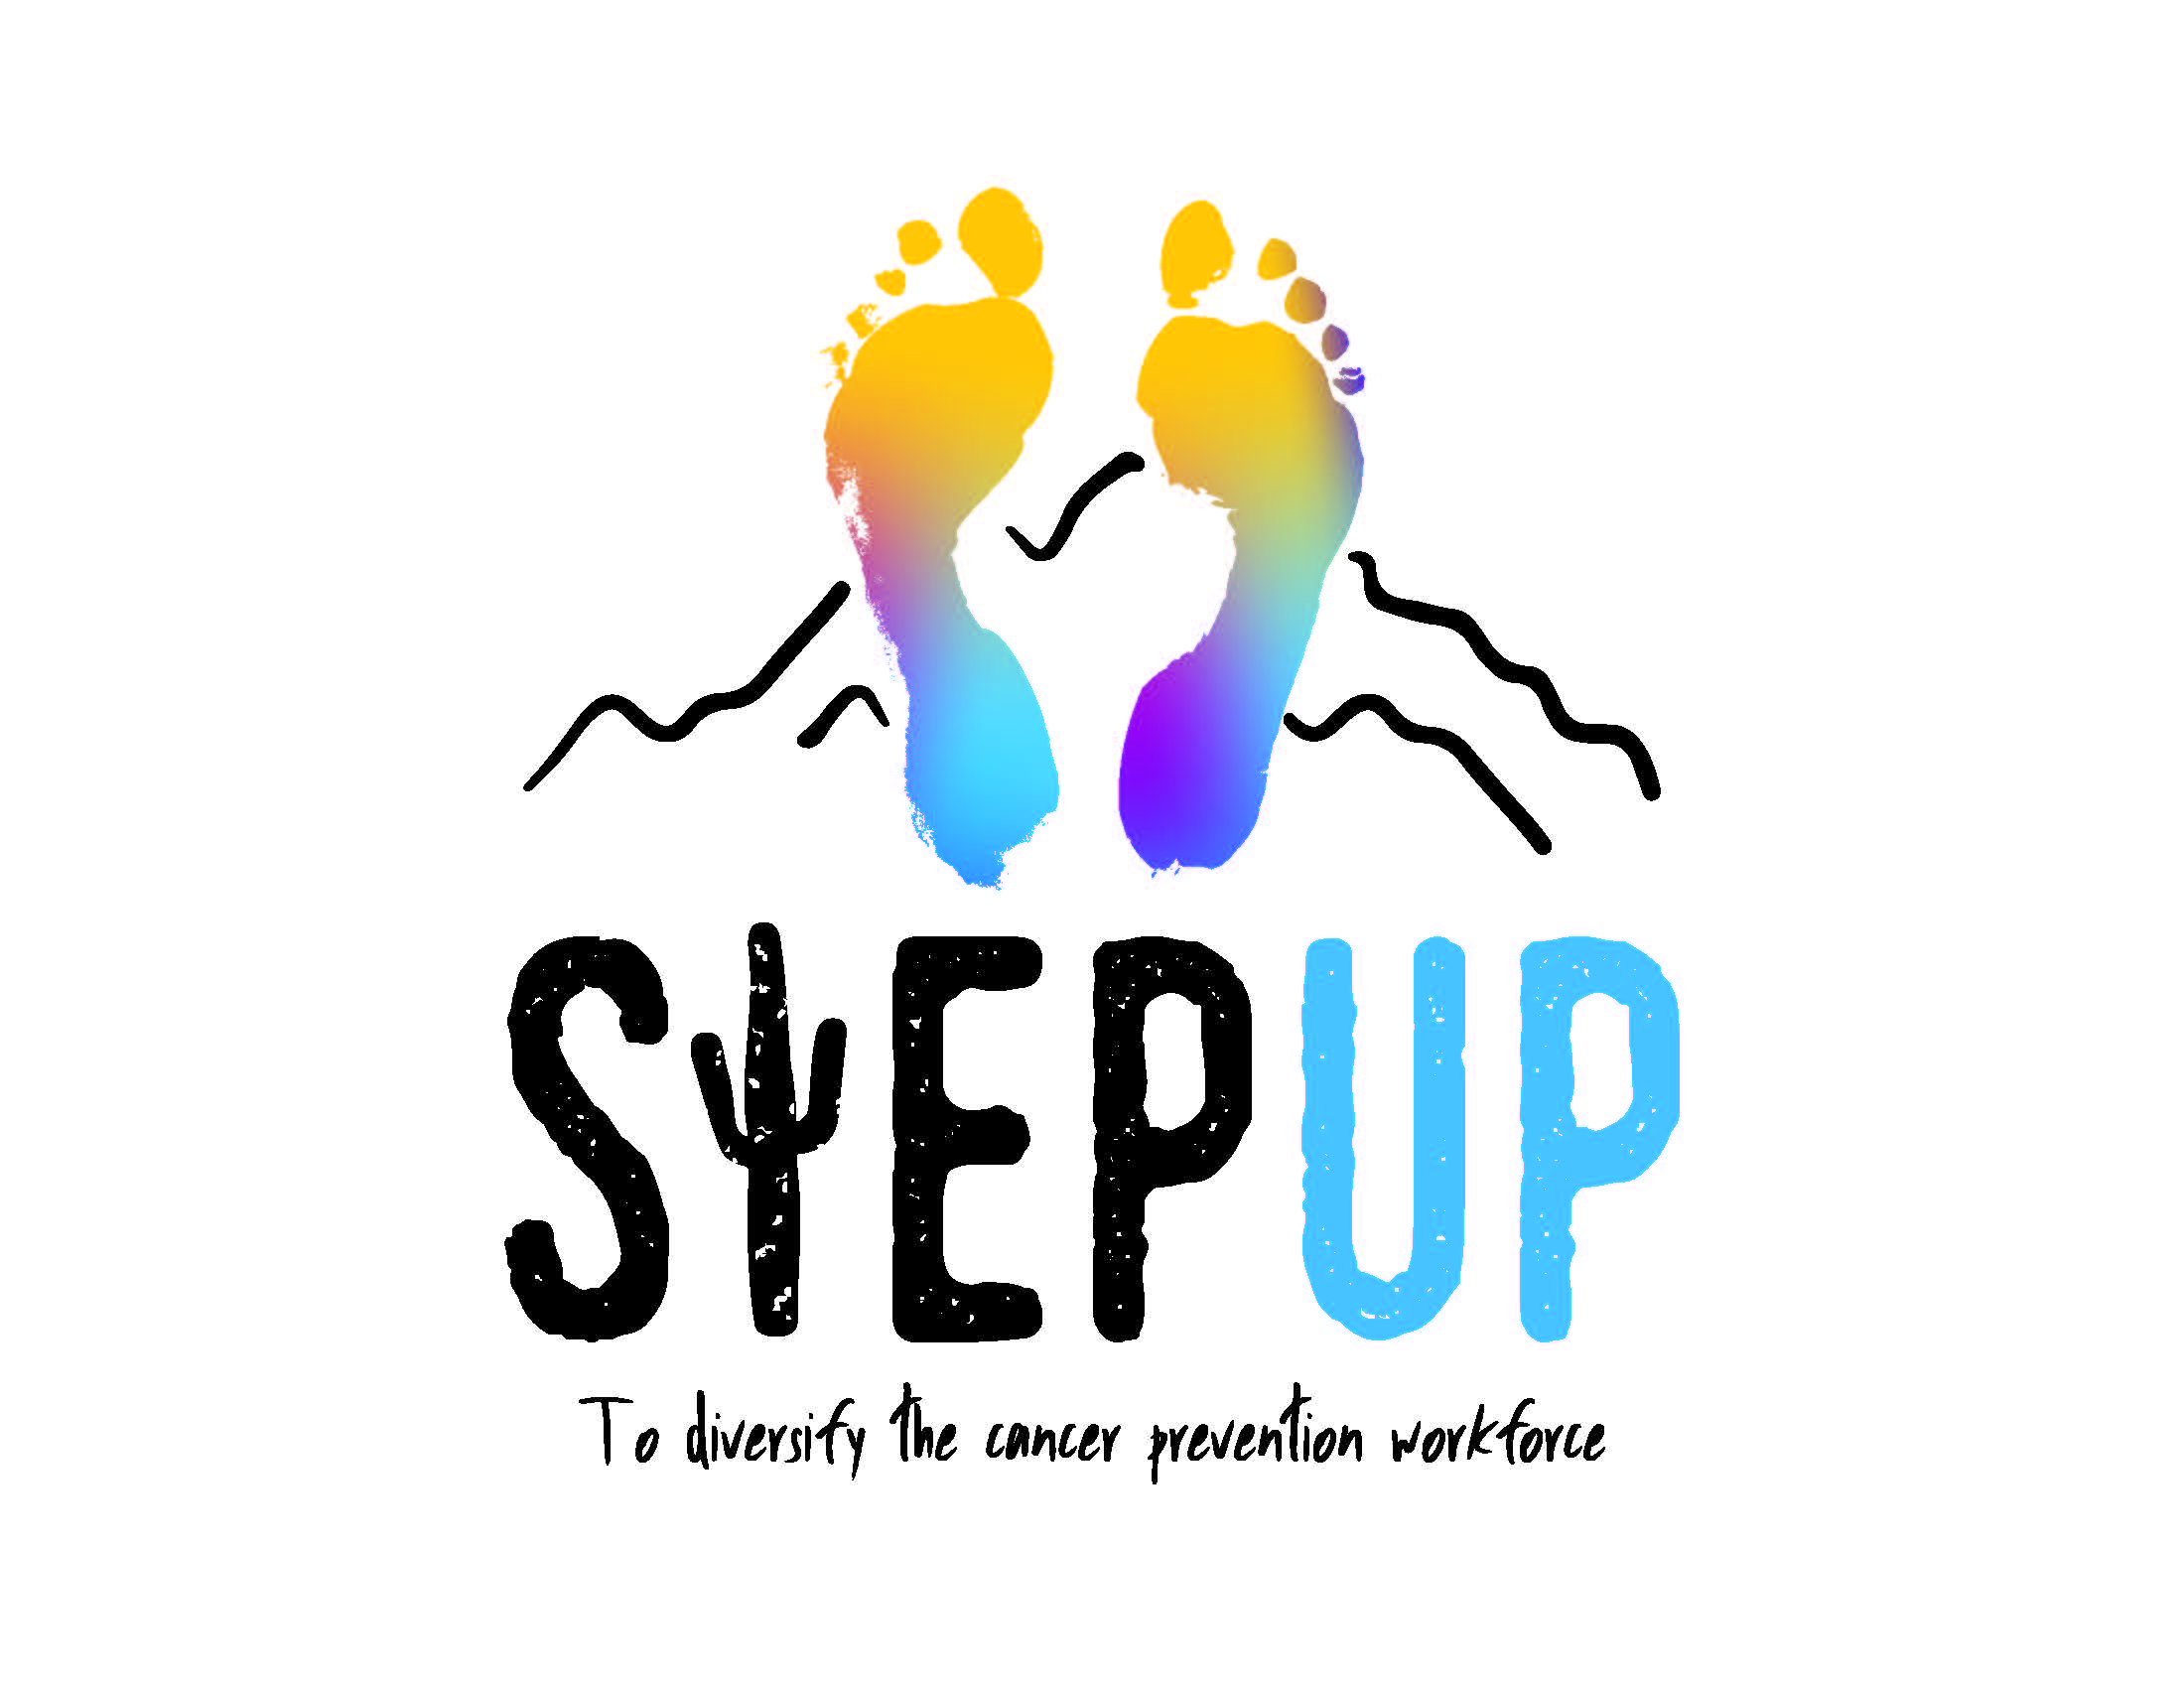 stepup logo